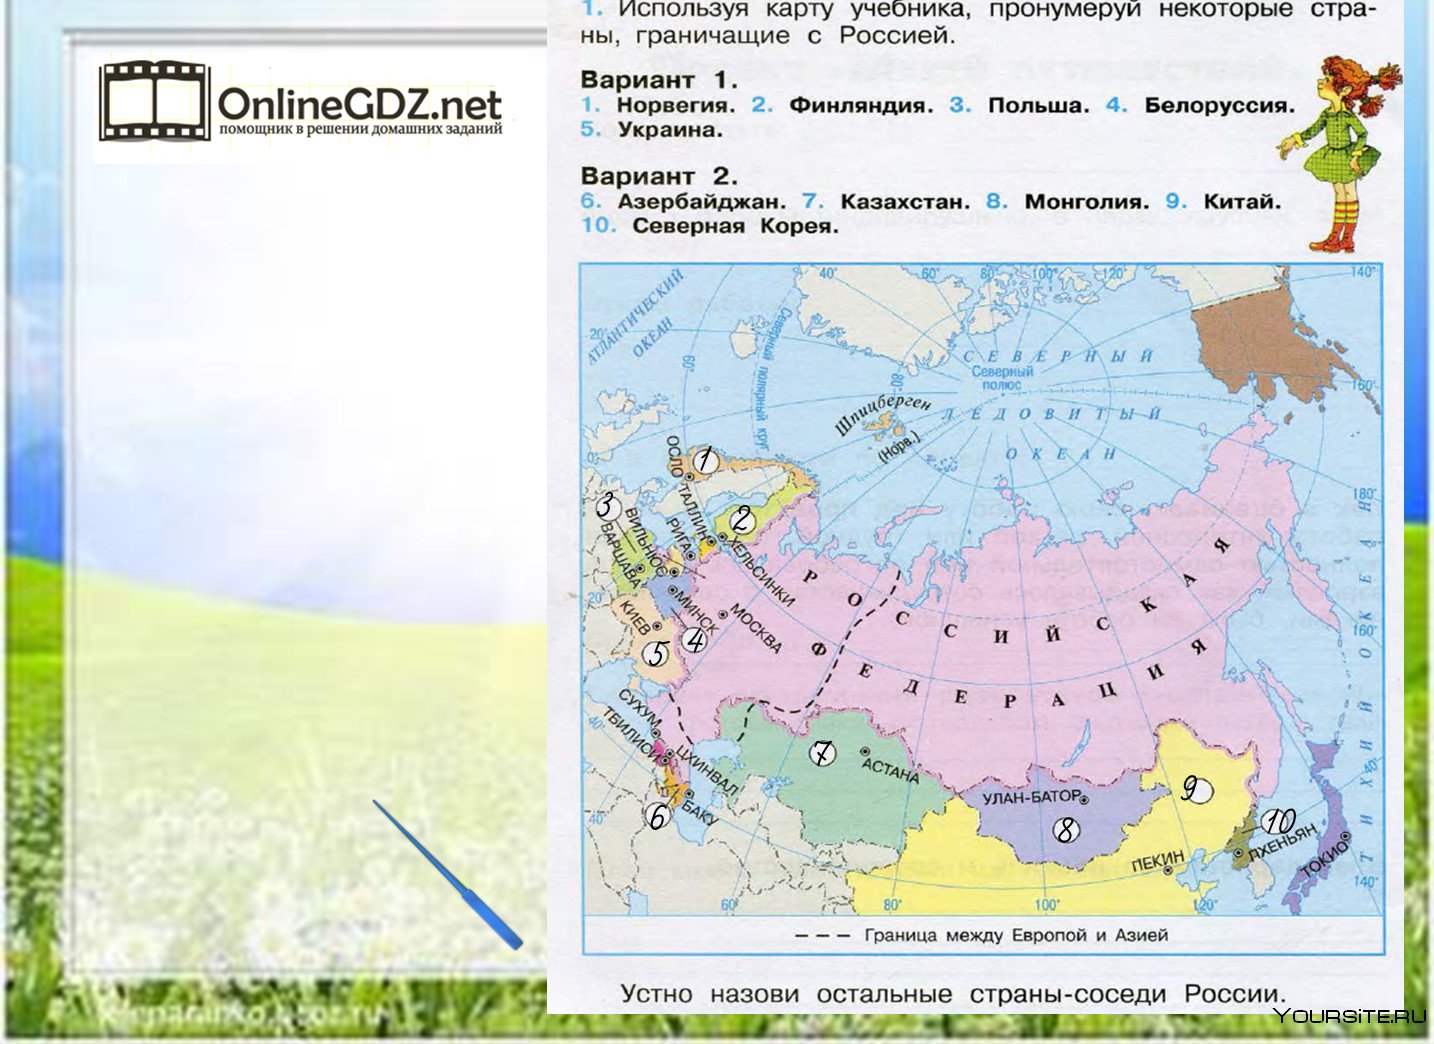 Какие страны наши ближайшие соседи. Соседи России на карте. Страны соседи России на карте. Соседи россиин7а карте. Карта России с соседями государствами.